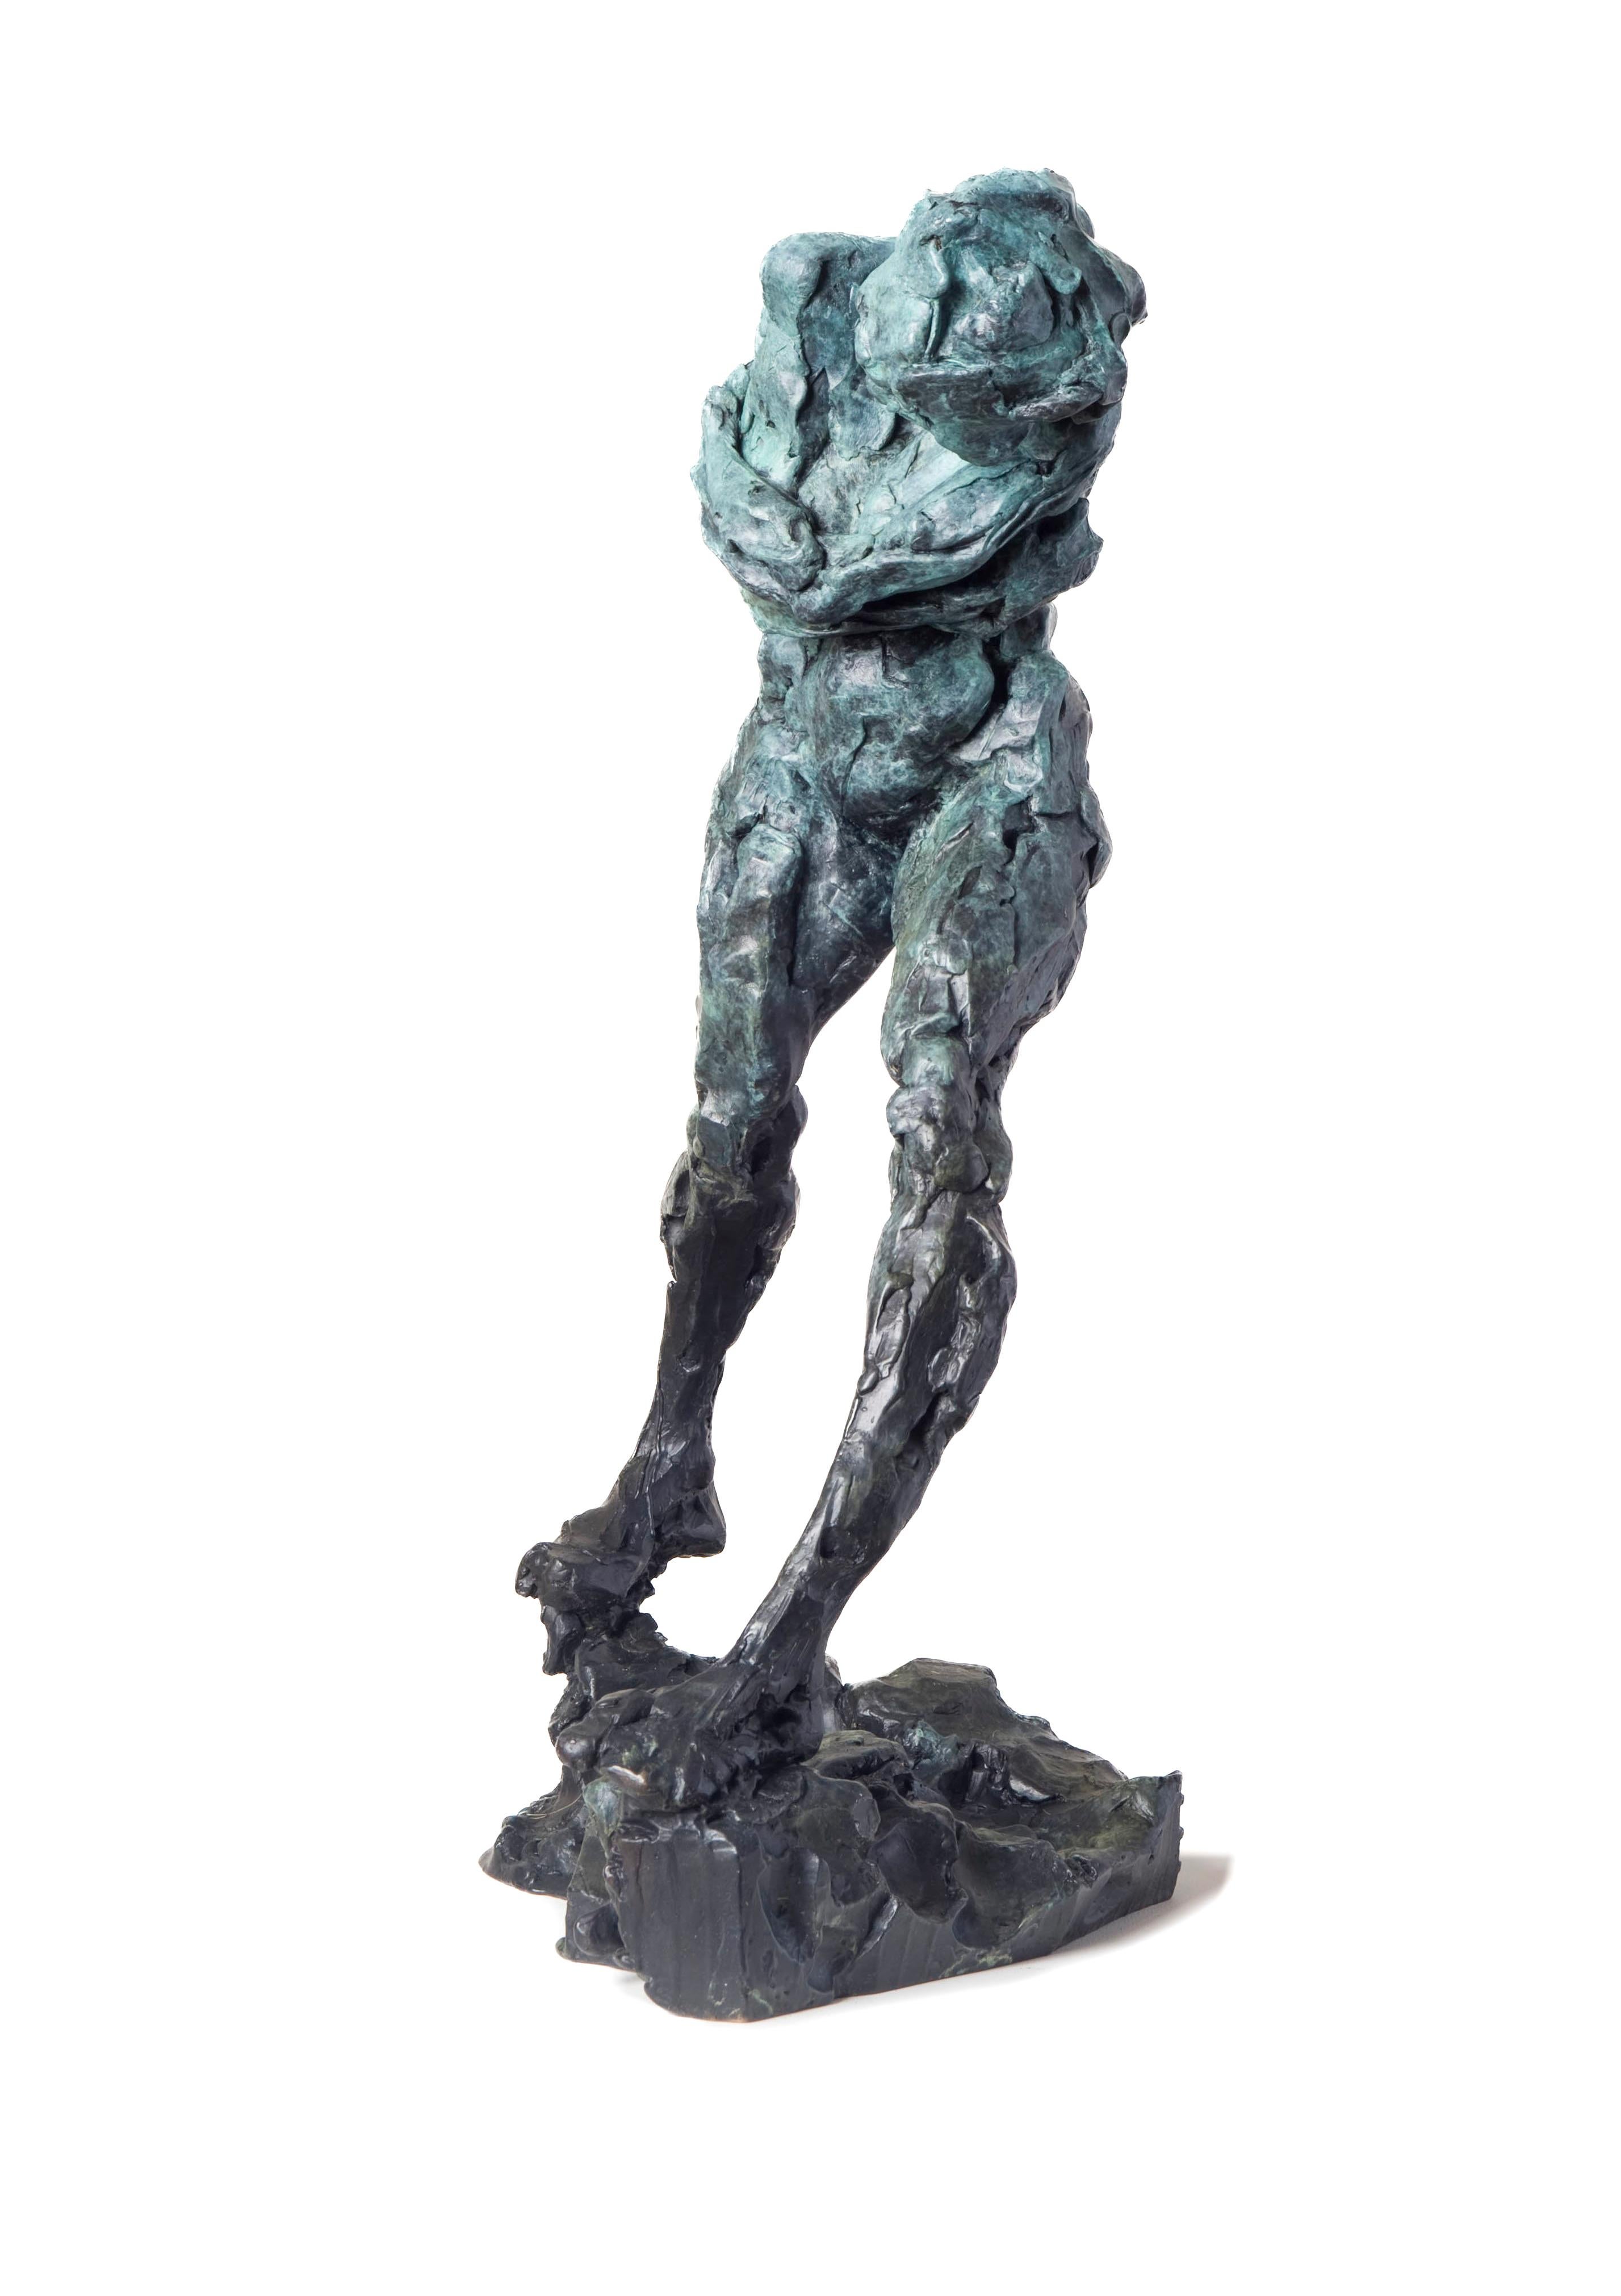 Geist der Schwerkraft  - Emotiv, nackt, weiblich, figurativ, Bronzestatuette (Zeitgenössisch), Sculpture, von Richard Tosczak